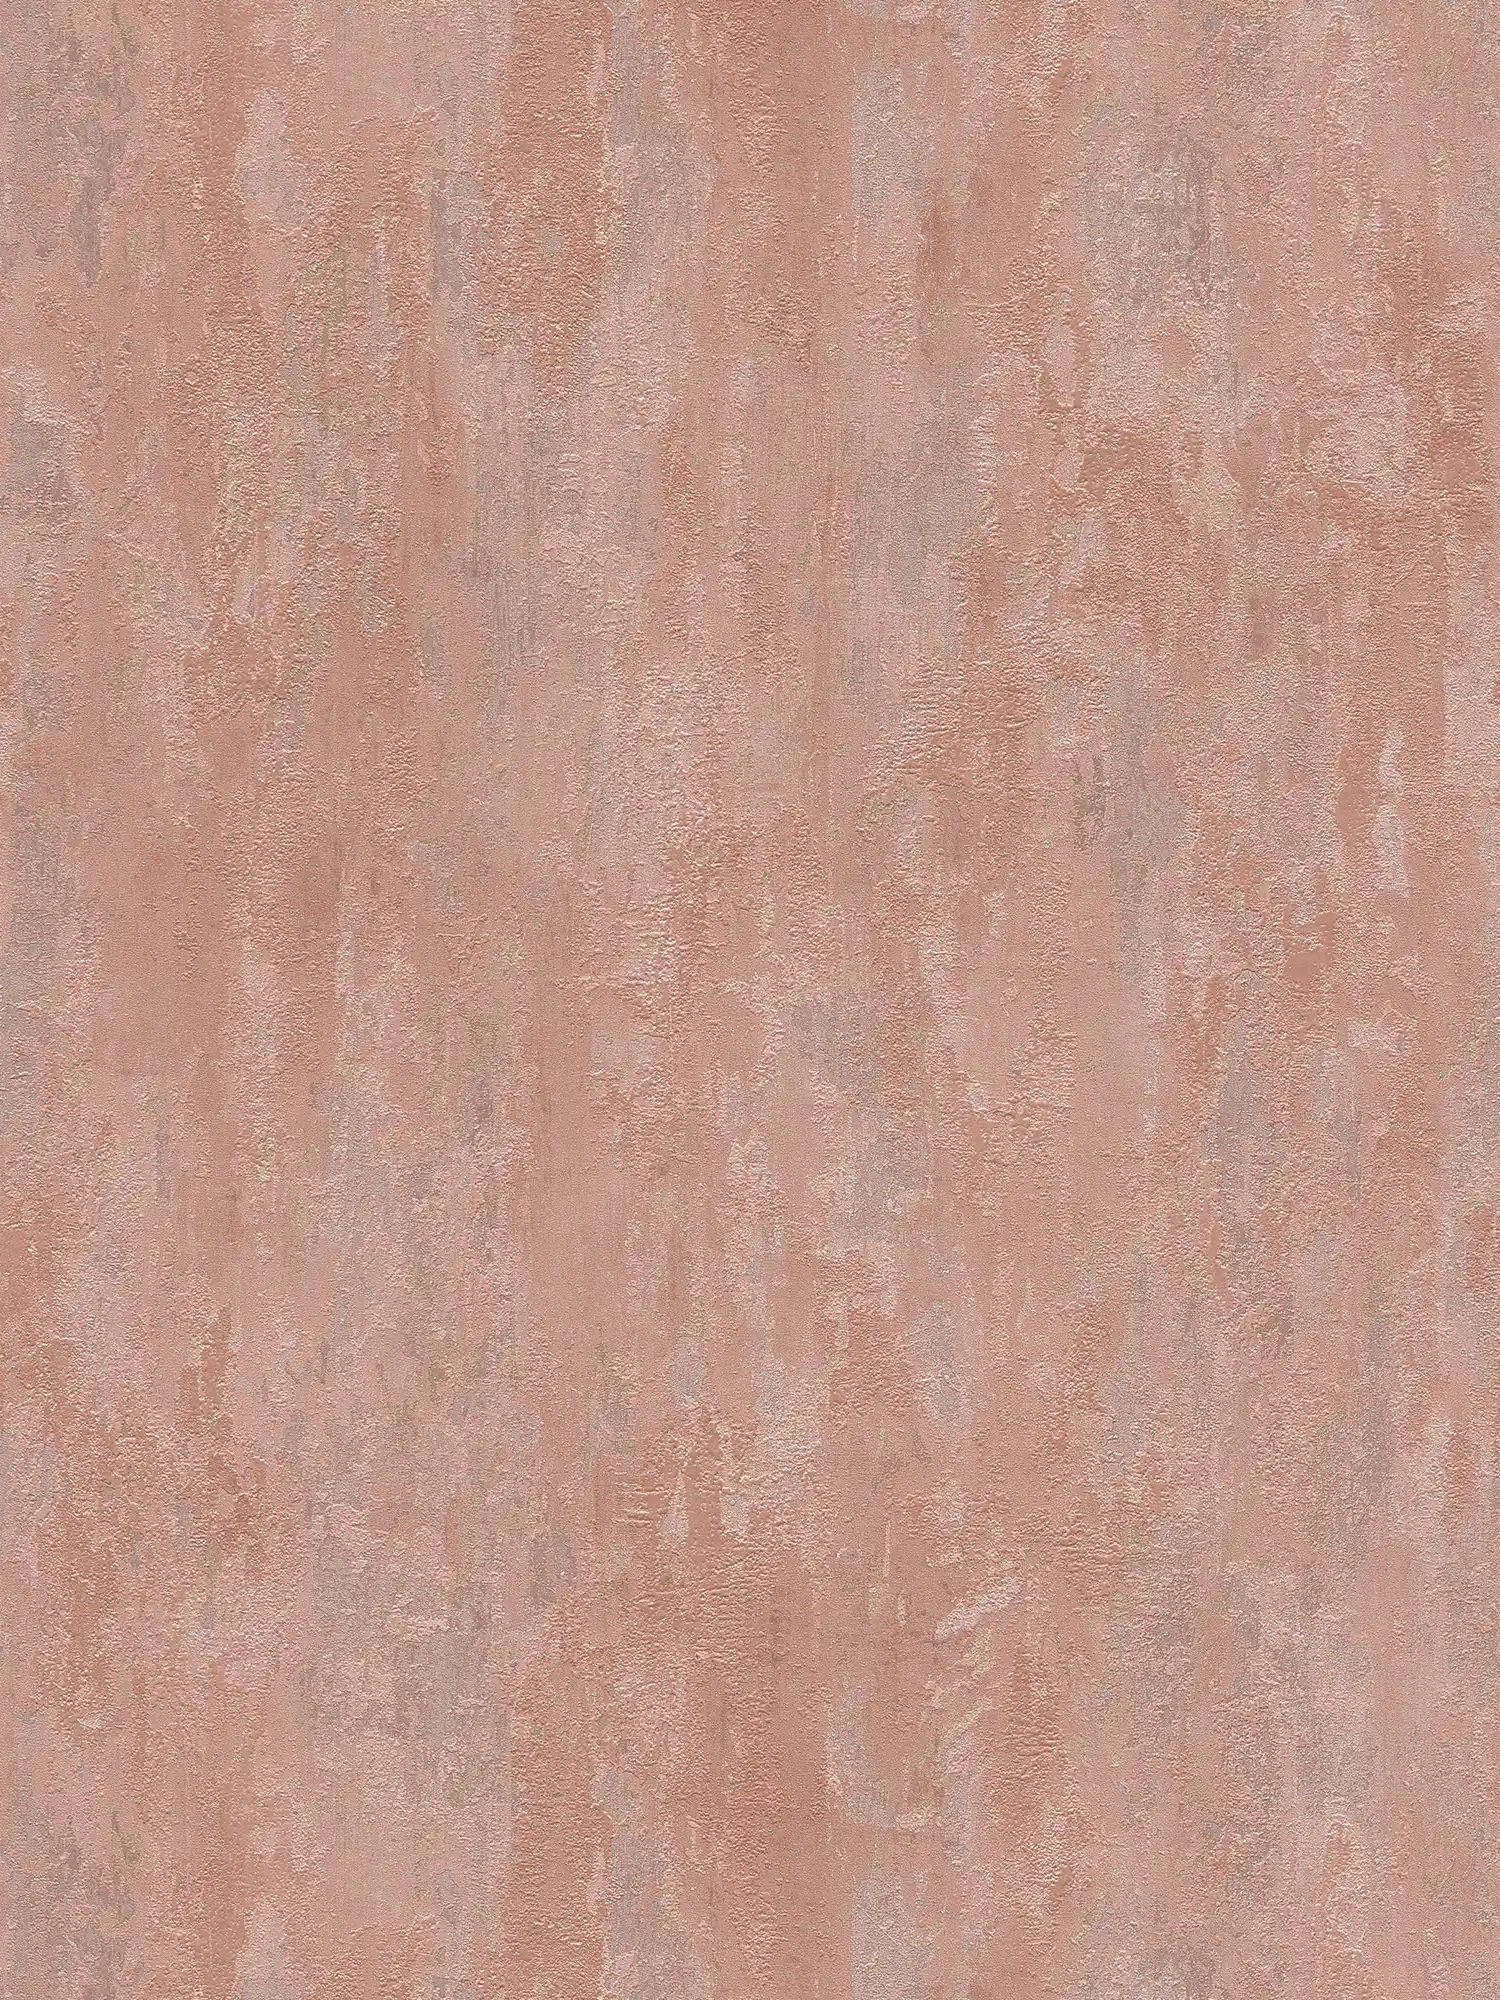             papel pintado estilo industrial con efecto de textura - metálico, rosa
        